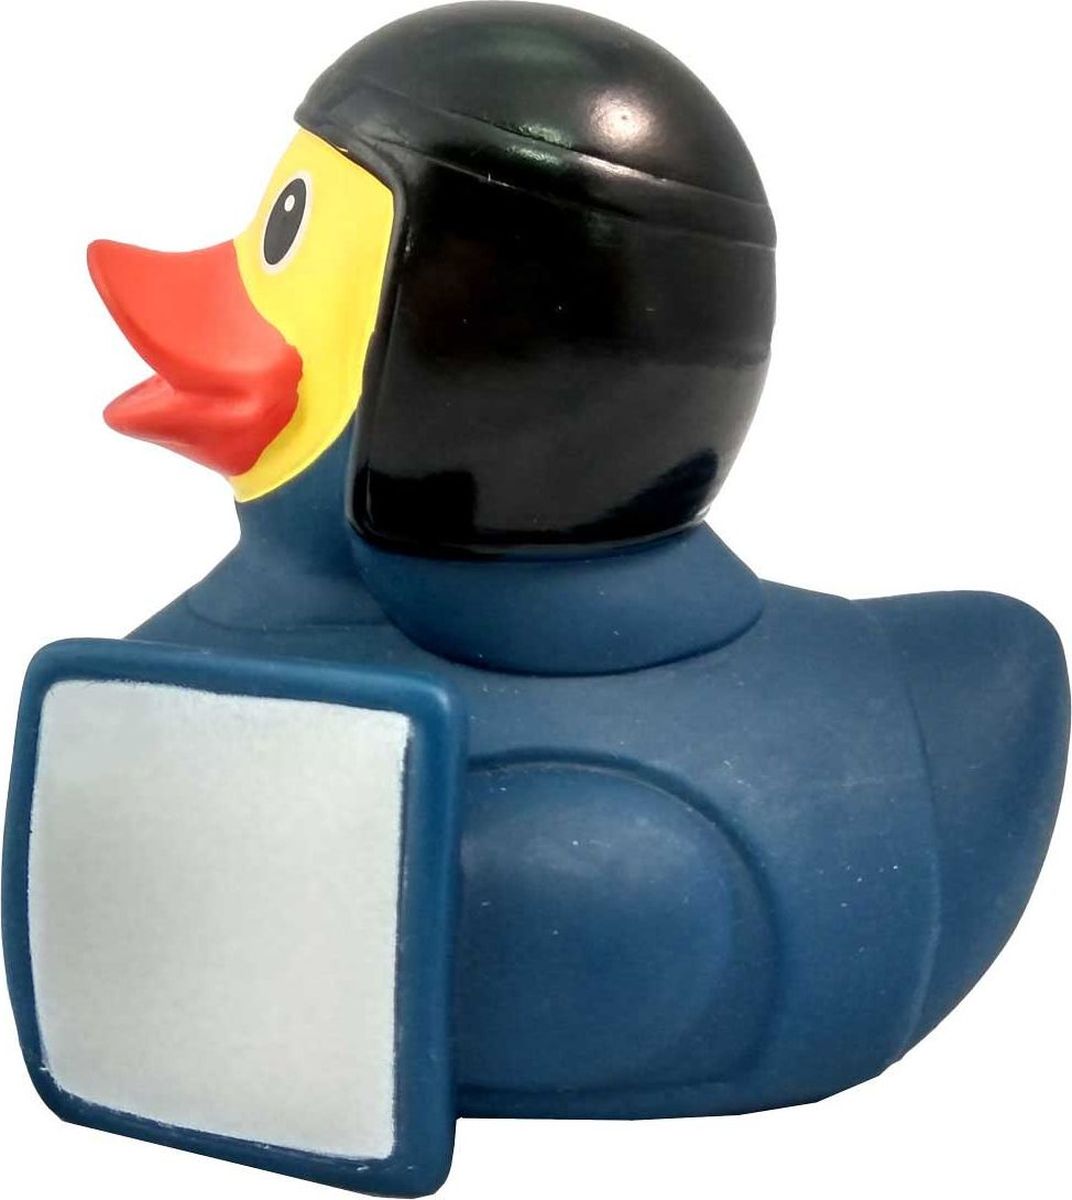 фото Игрушка для ванной FUNNY DUCKS " Уточка омоновец", цвет : синий, черный.